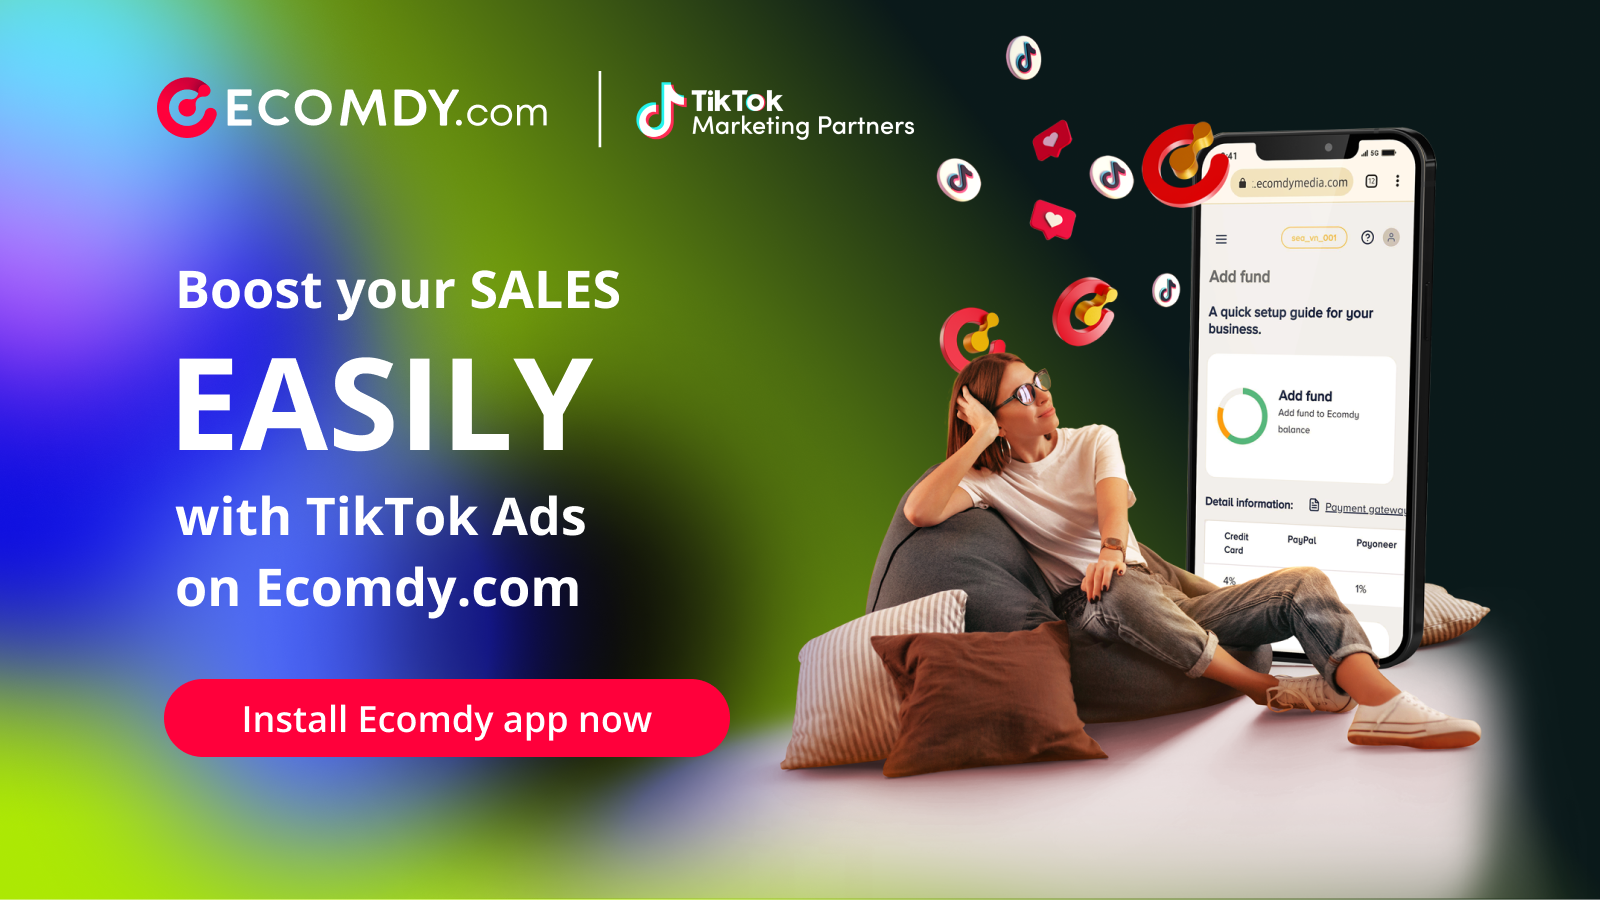 Impulsa las ventas fácilmente con anuncios de TikTok en Ecomdy.com